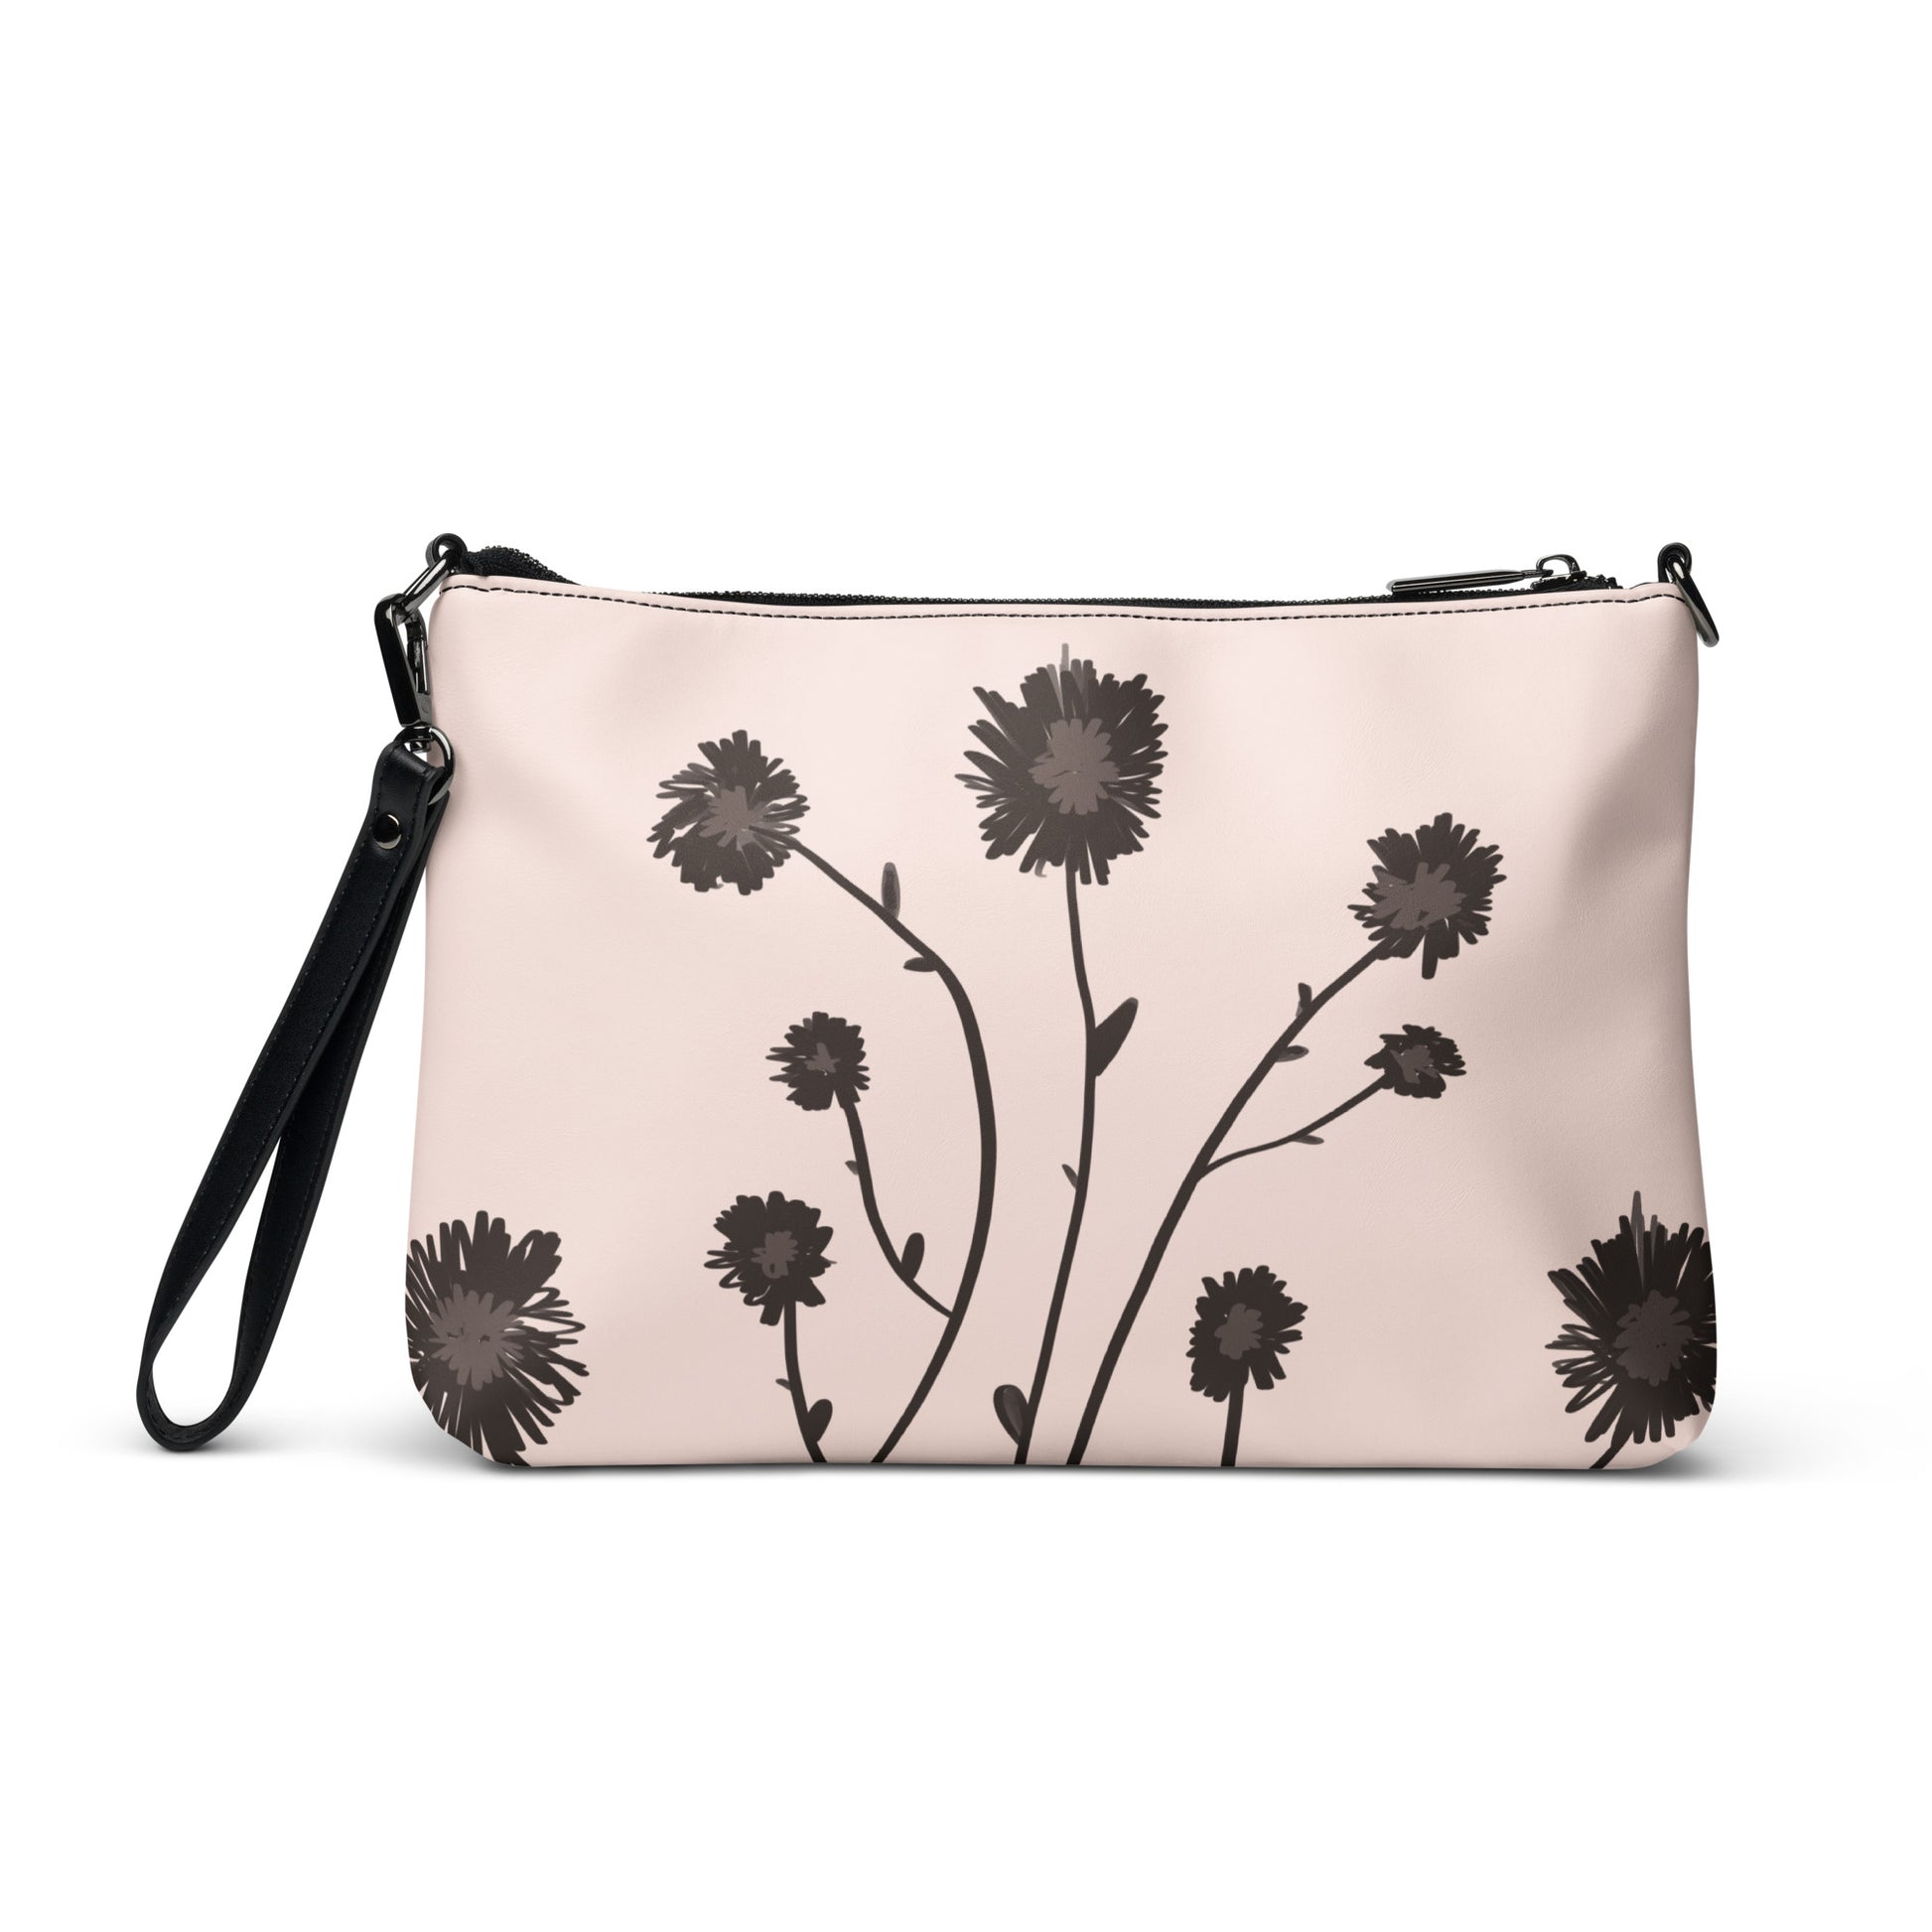 Floral Boho Crossbody bag by Emmy Spoon